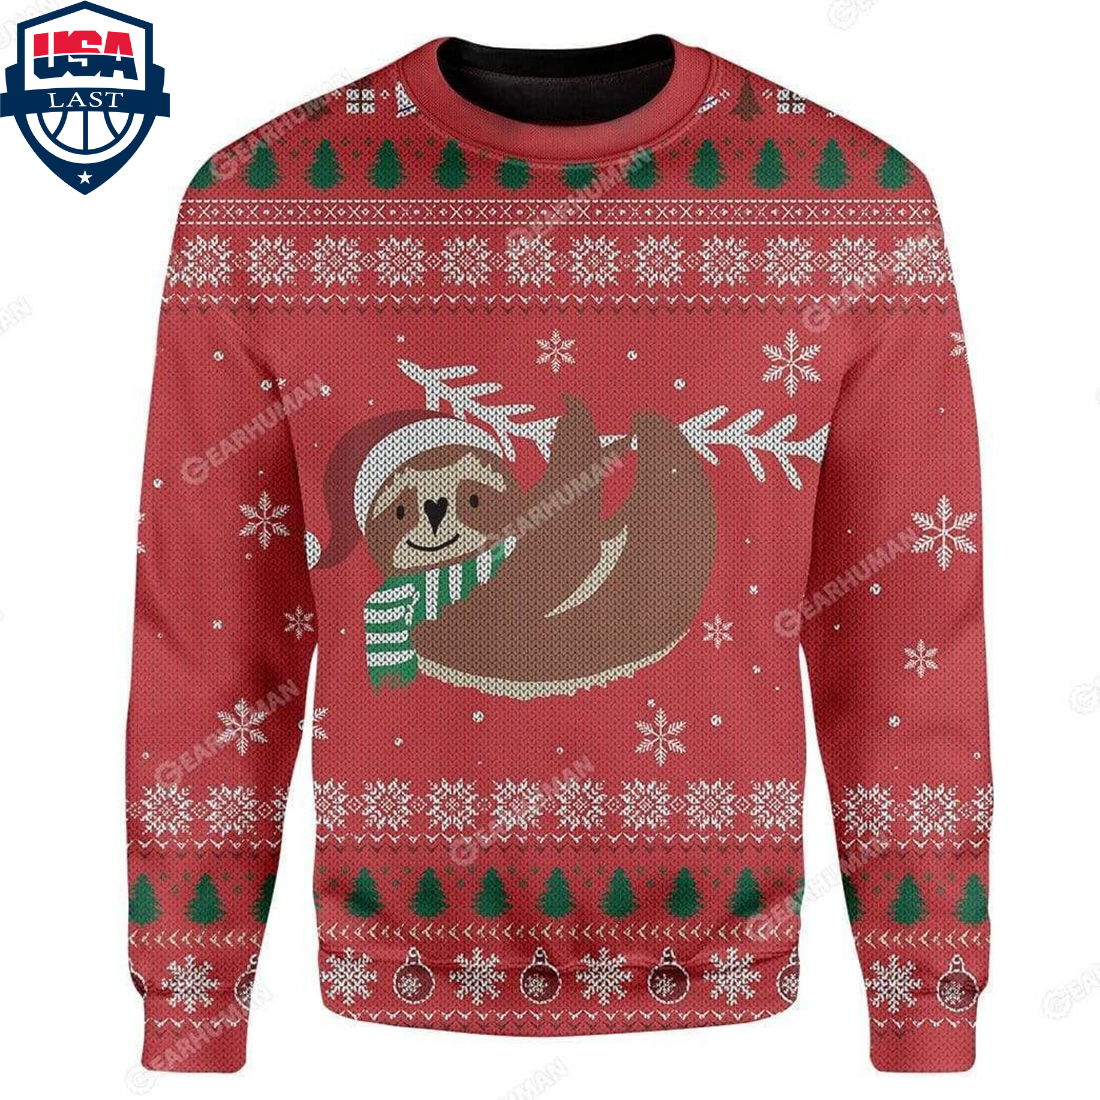 Sloth ugly christmas sweater